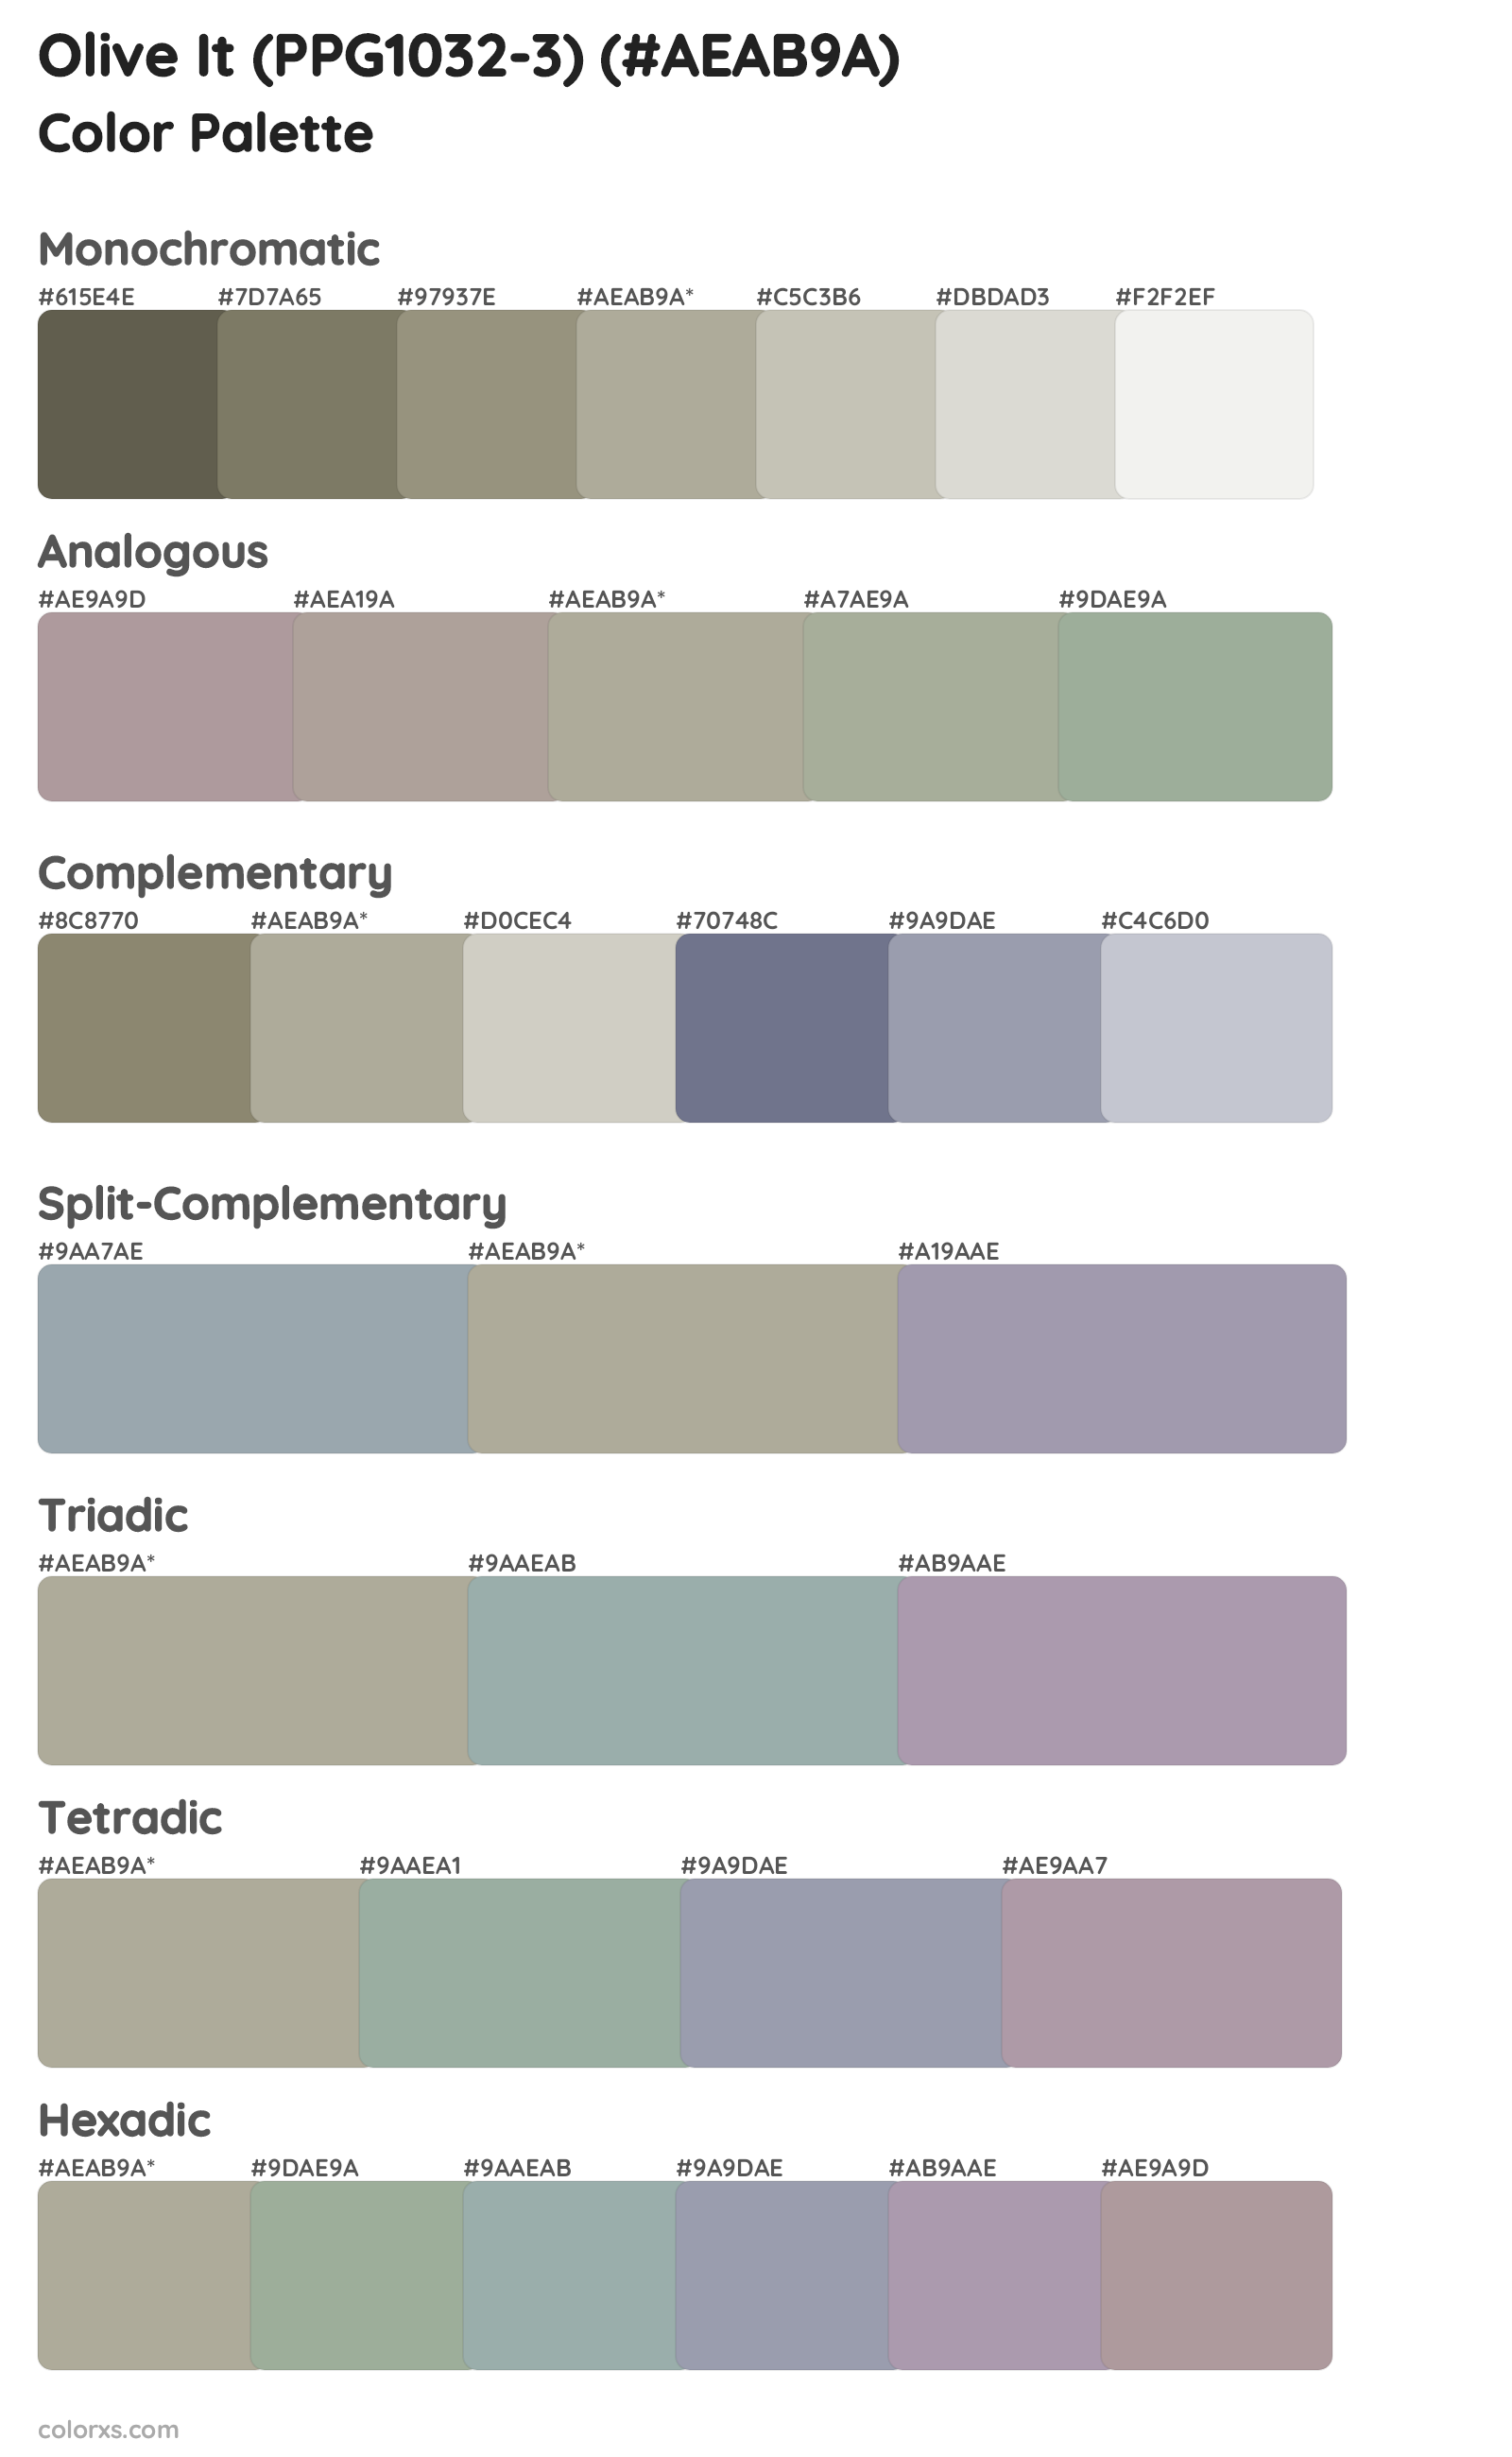 Olive It (PPG1032-3) Color Scheme Palettes